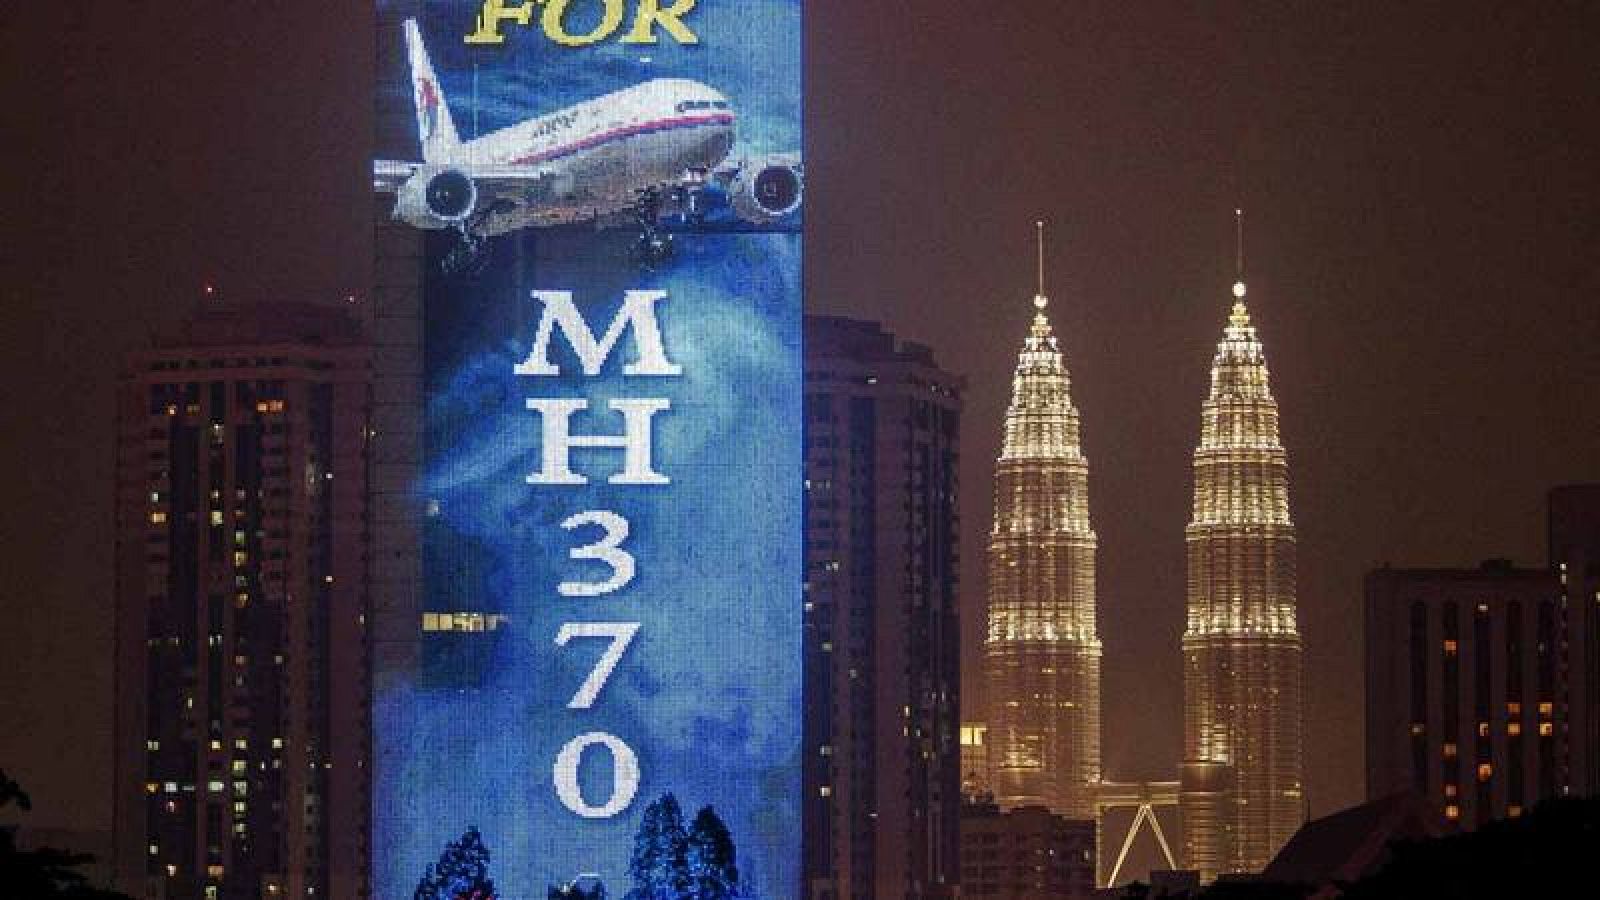 El vuelo MH370 de Malaysia Airlines desapareció sin dejar rastro el 8 de marzo de 2014.